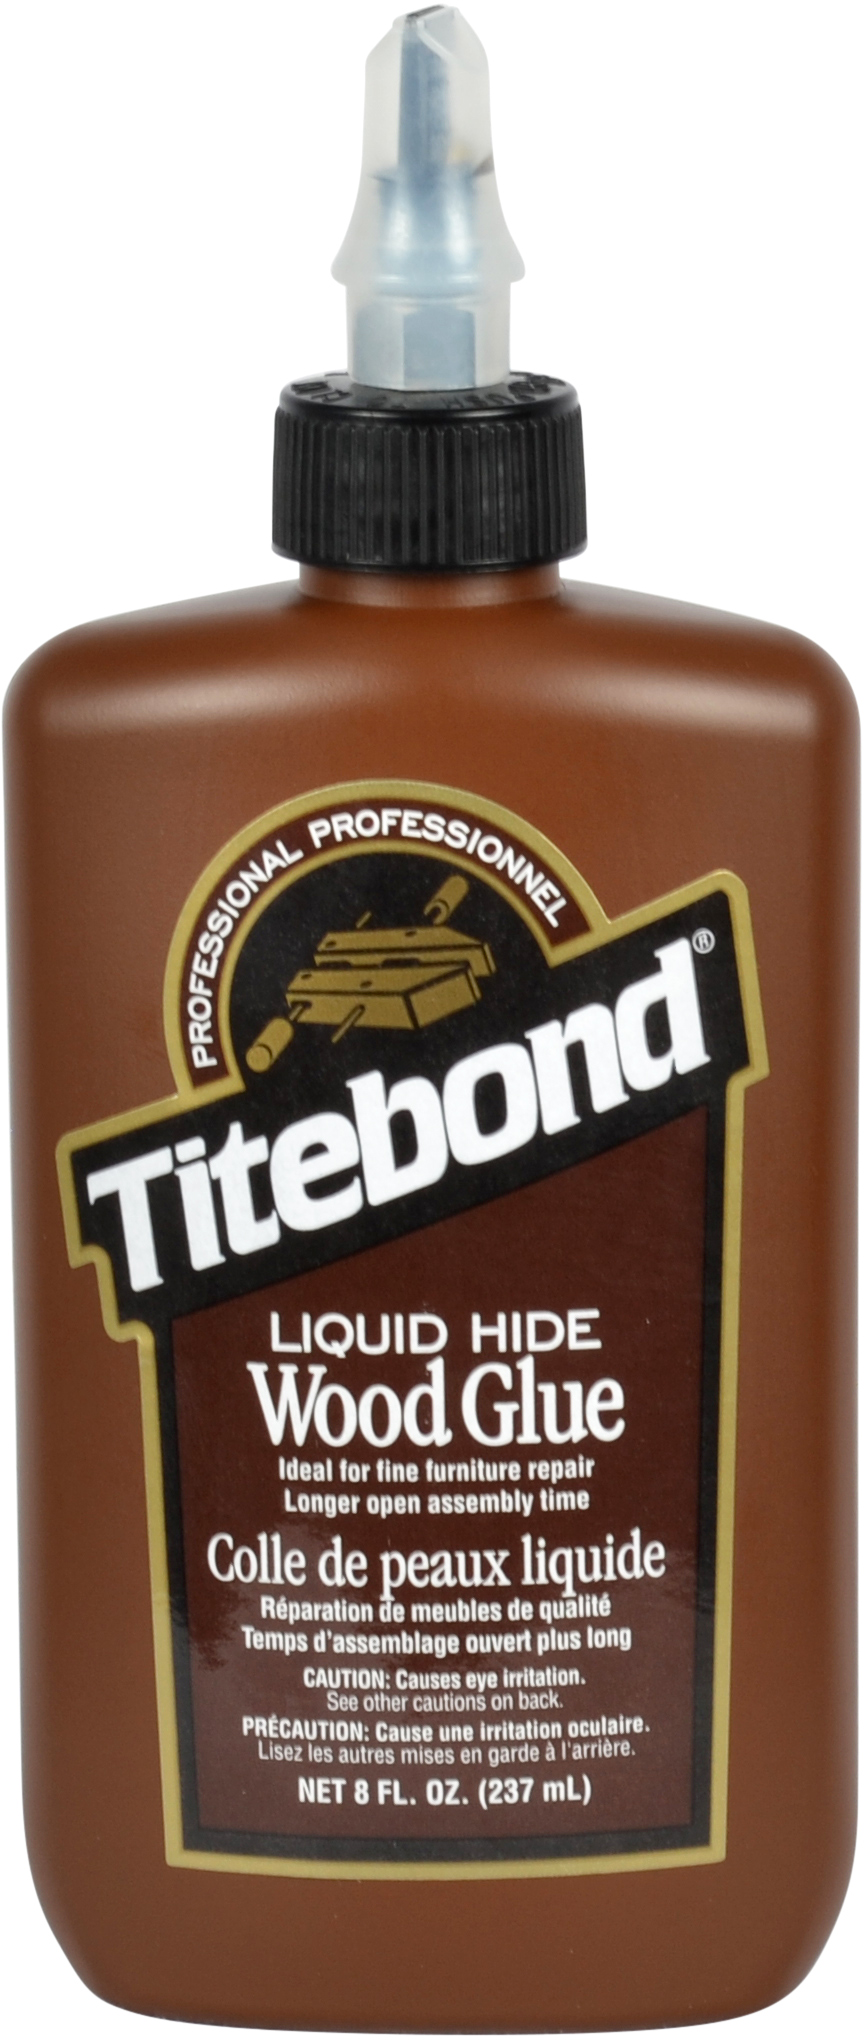 Colle TITEBOND liquid hide wood glue